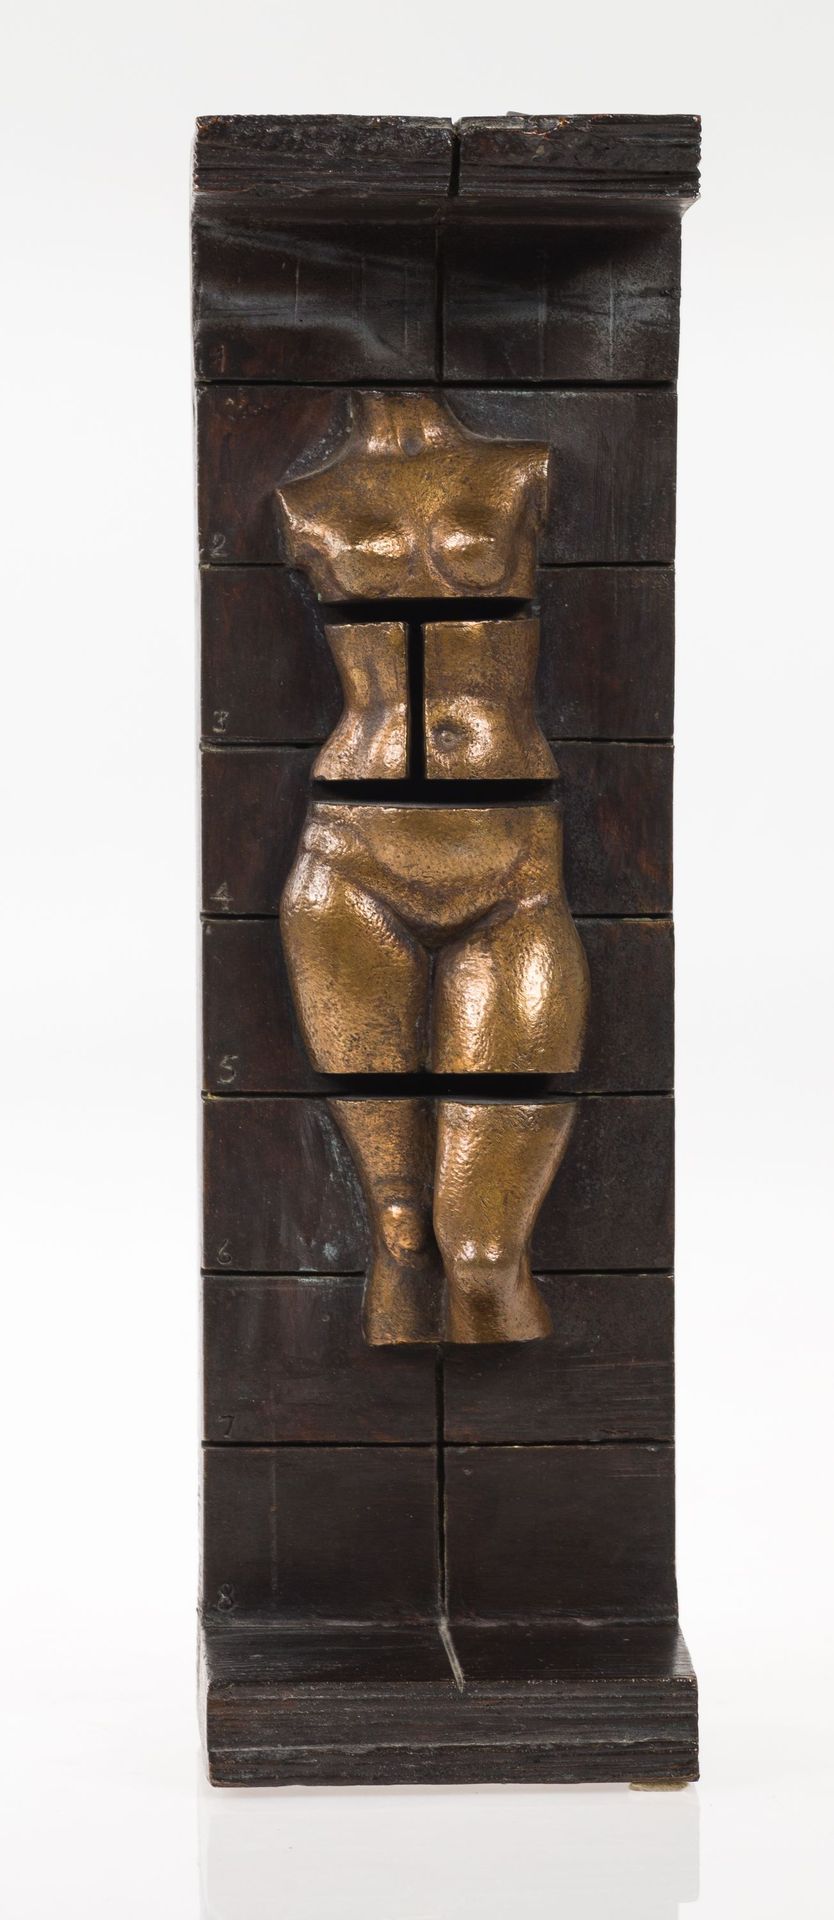 JOSÉ MARÍA SUBIRACHS 青铜雕塑。

 一面署名苏比拉赫斯。背面有铸造厂的印章。

 

 尺寸：33 x 10 x 8厘米。